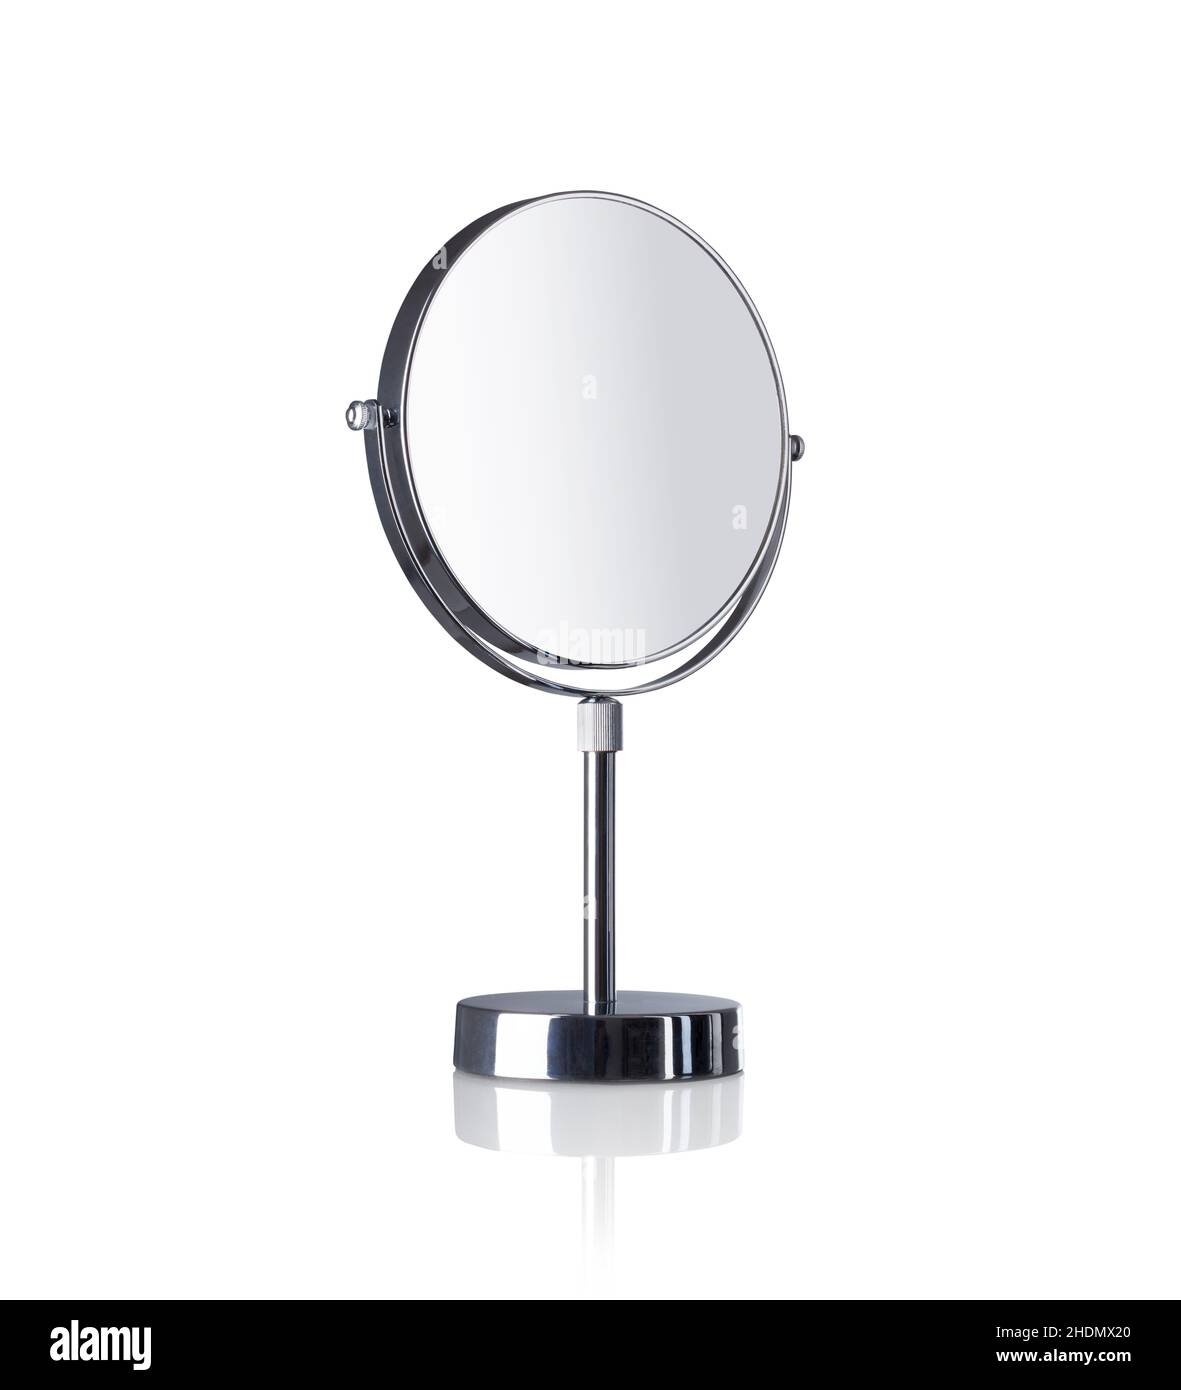 miroir de maquillage, miroirs de maquillage Banque D'Images